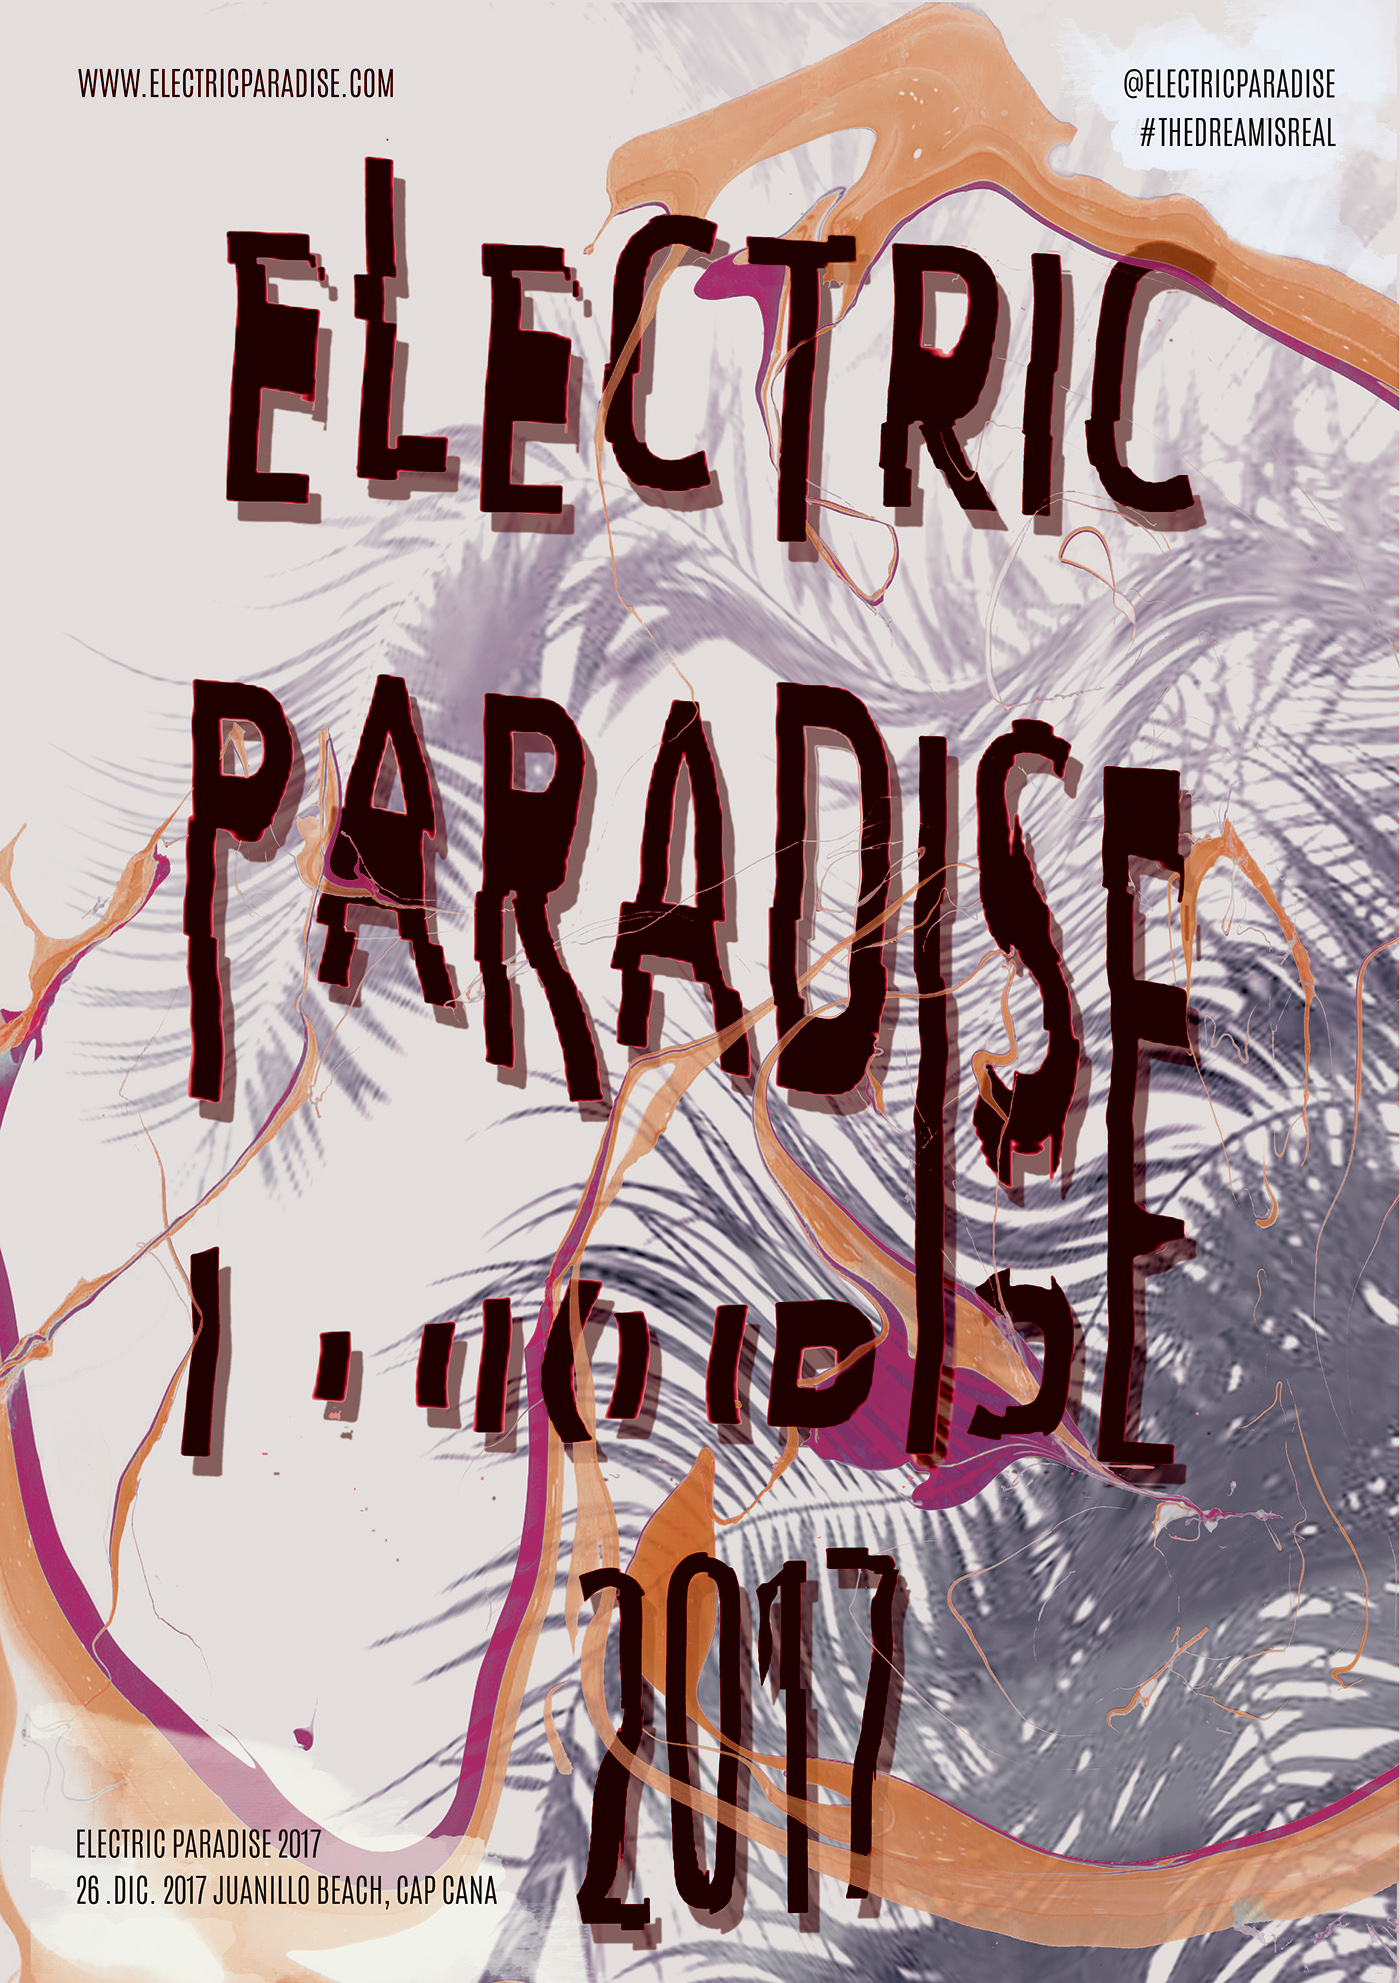 electric festival identity design Tropical Fun dominican chavon Event brand